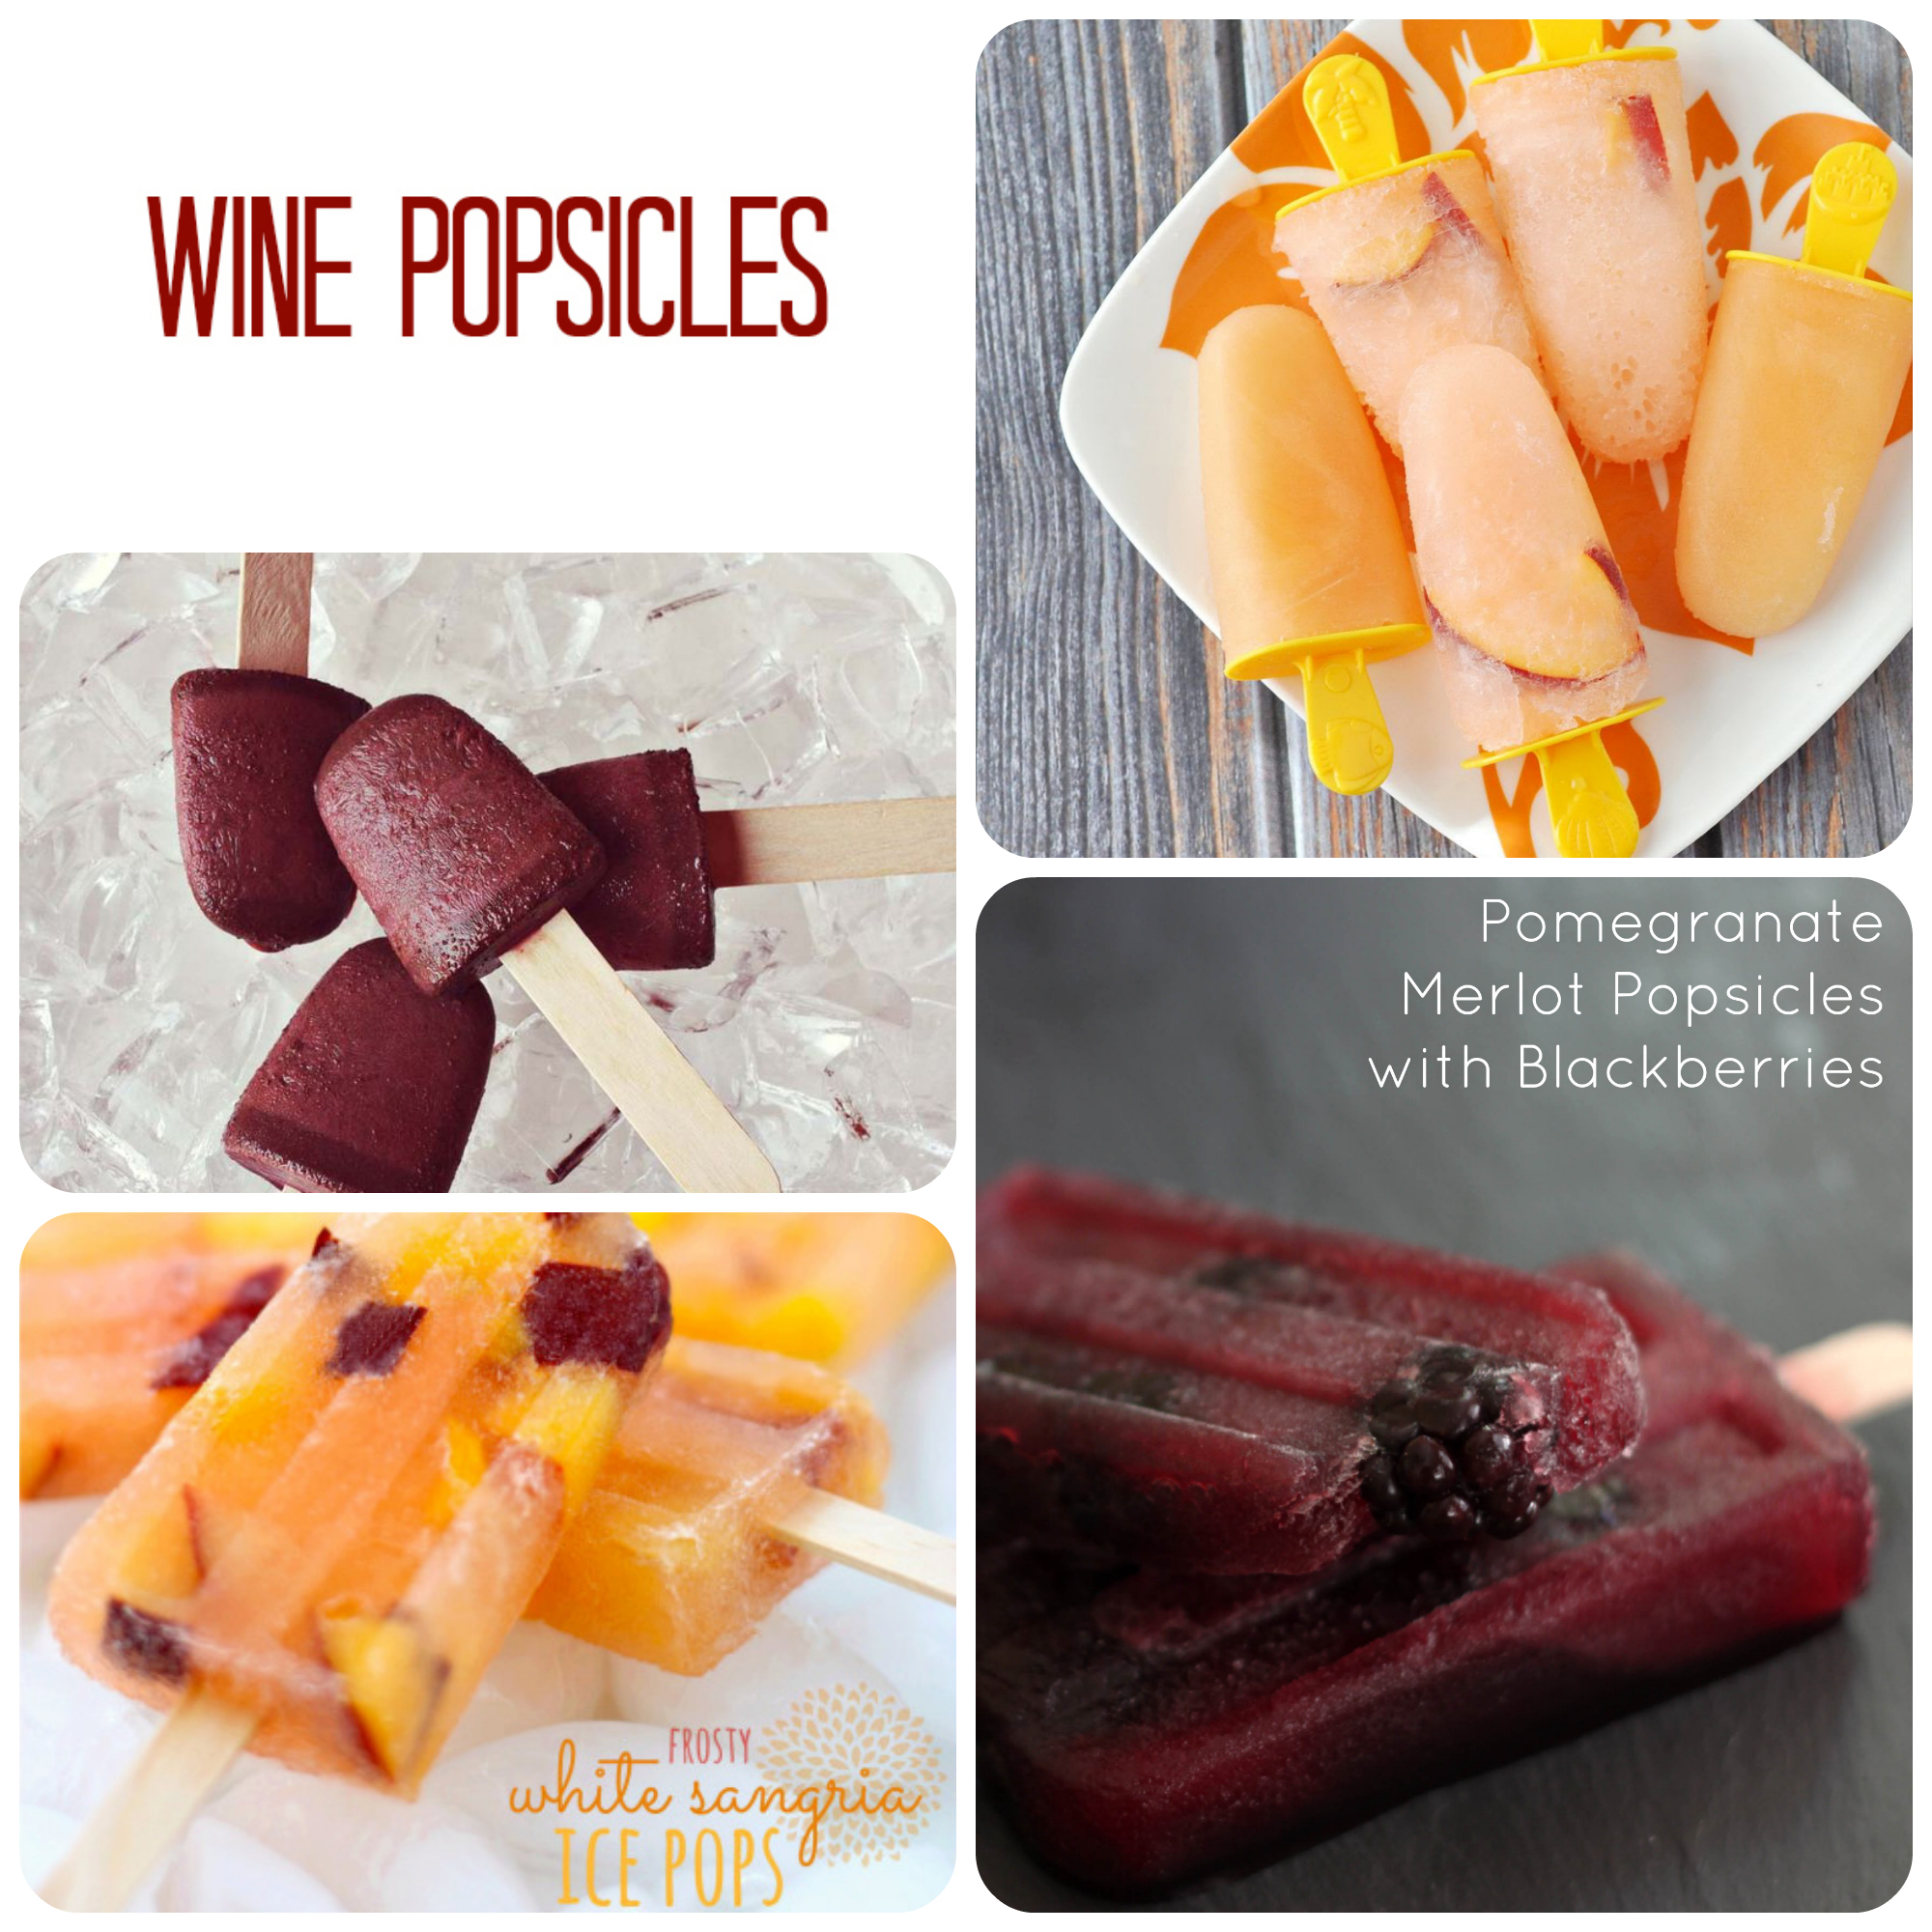 Wine popsicles